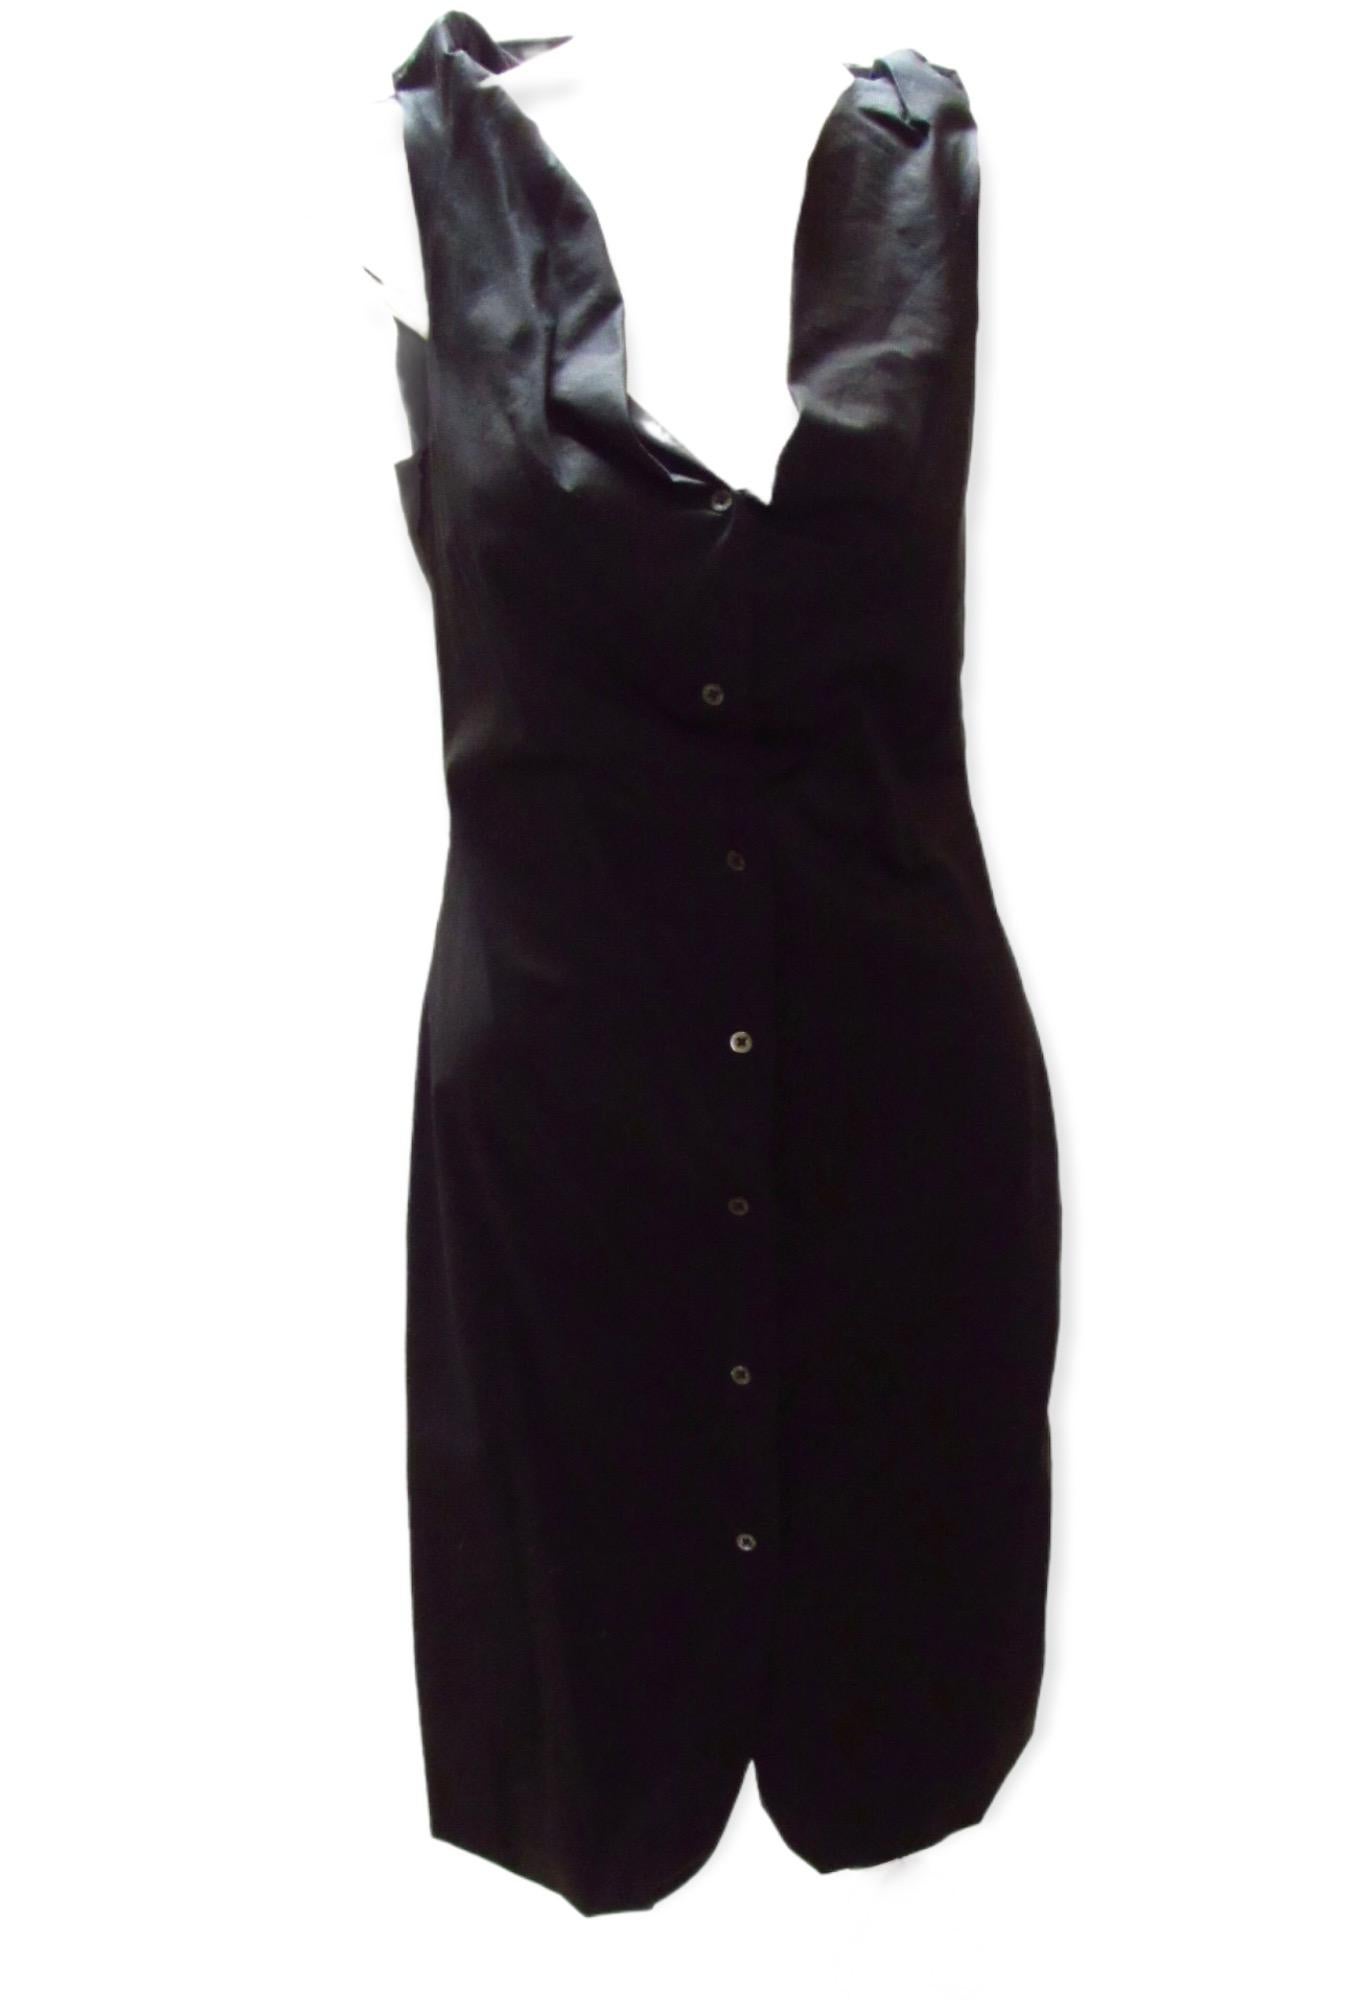 Une magnifique petite robe noire du vintage Vivienne Westwood Anglomania. Une robe boutonnée à l'avant qui épousera vos courbes et des bretelles 